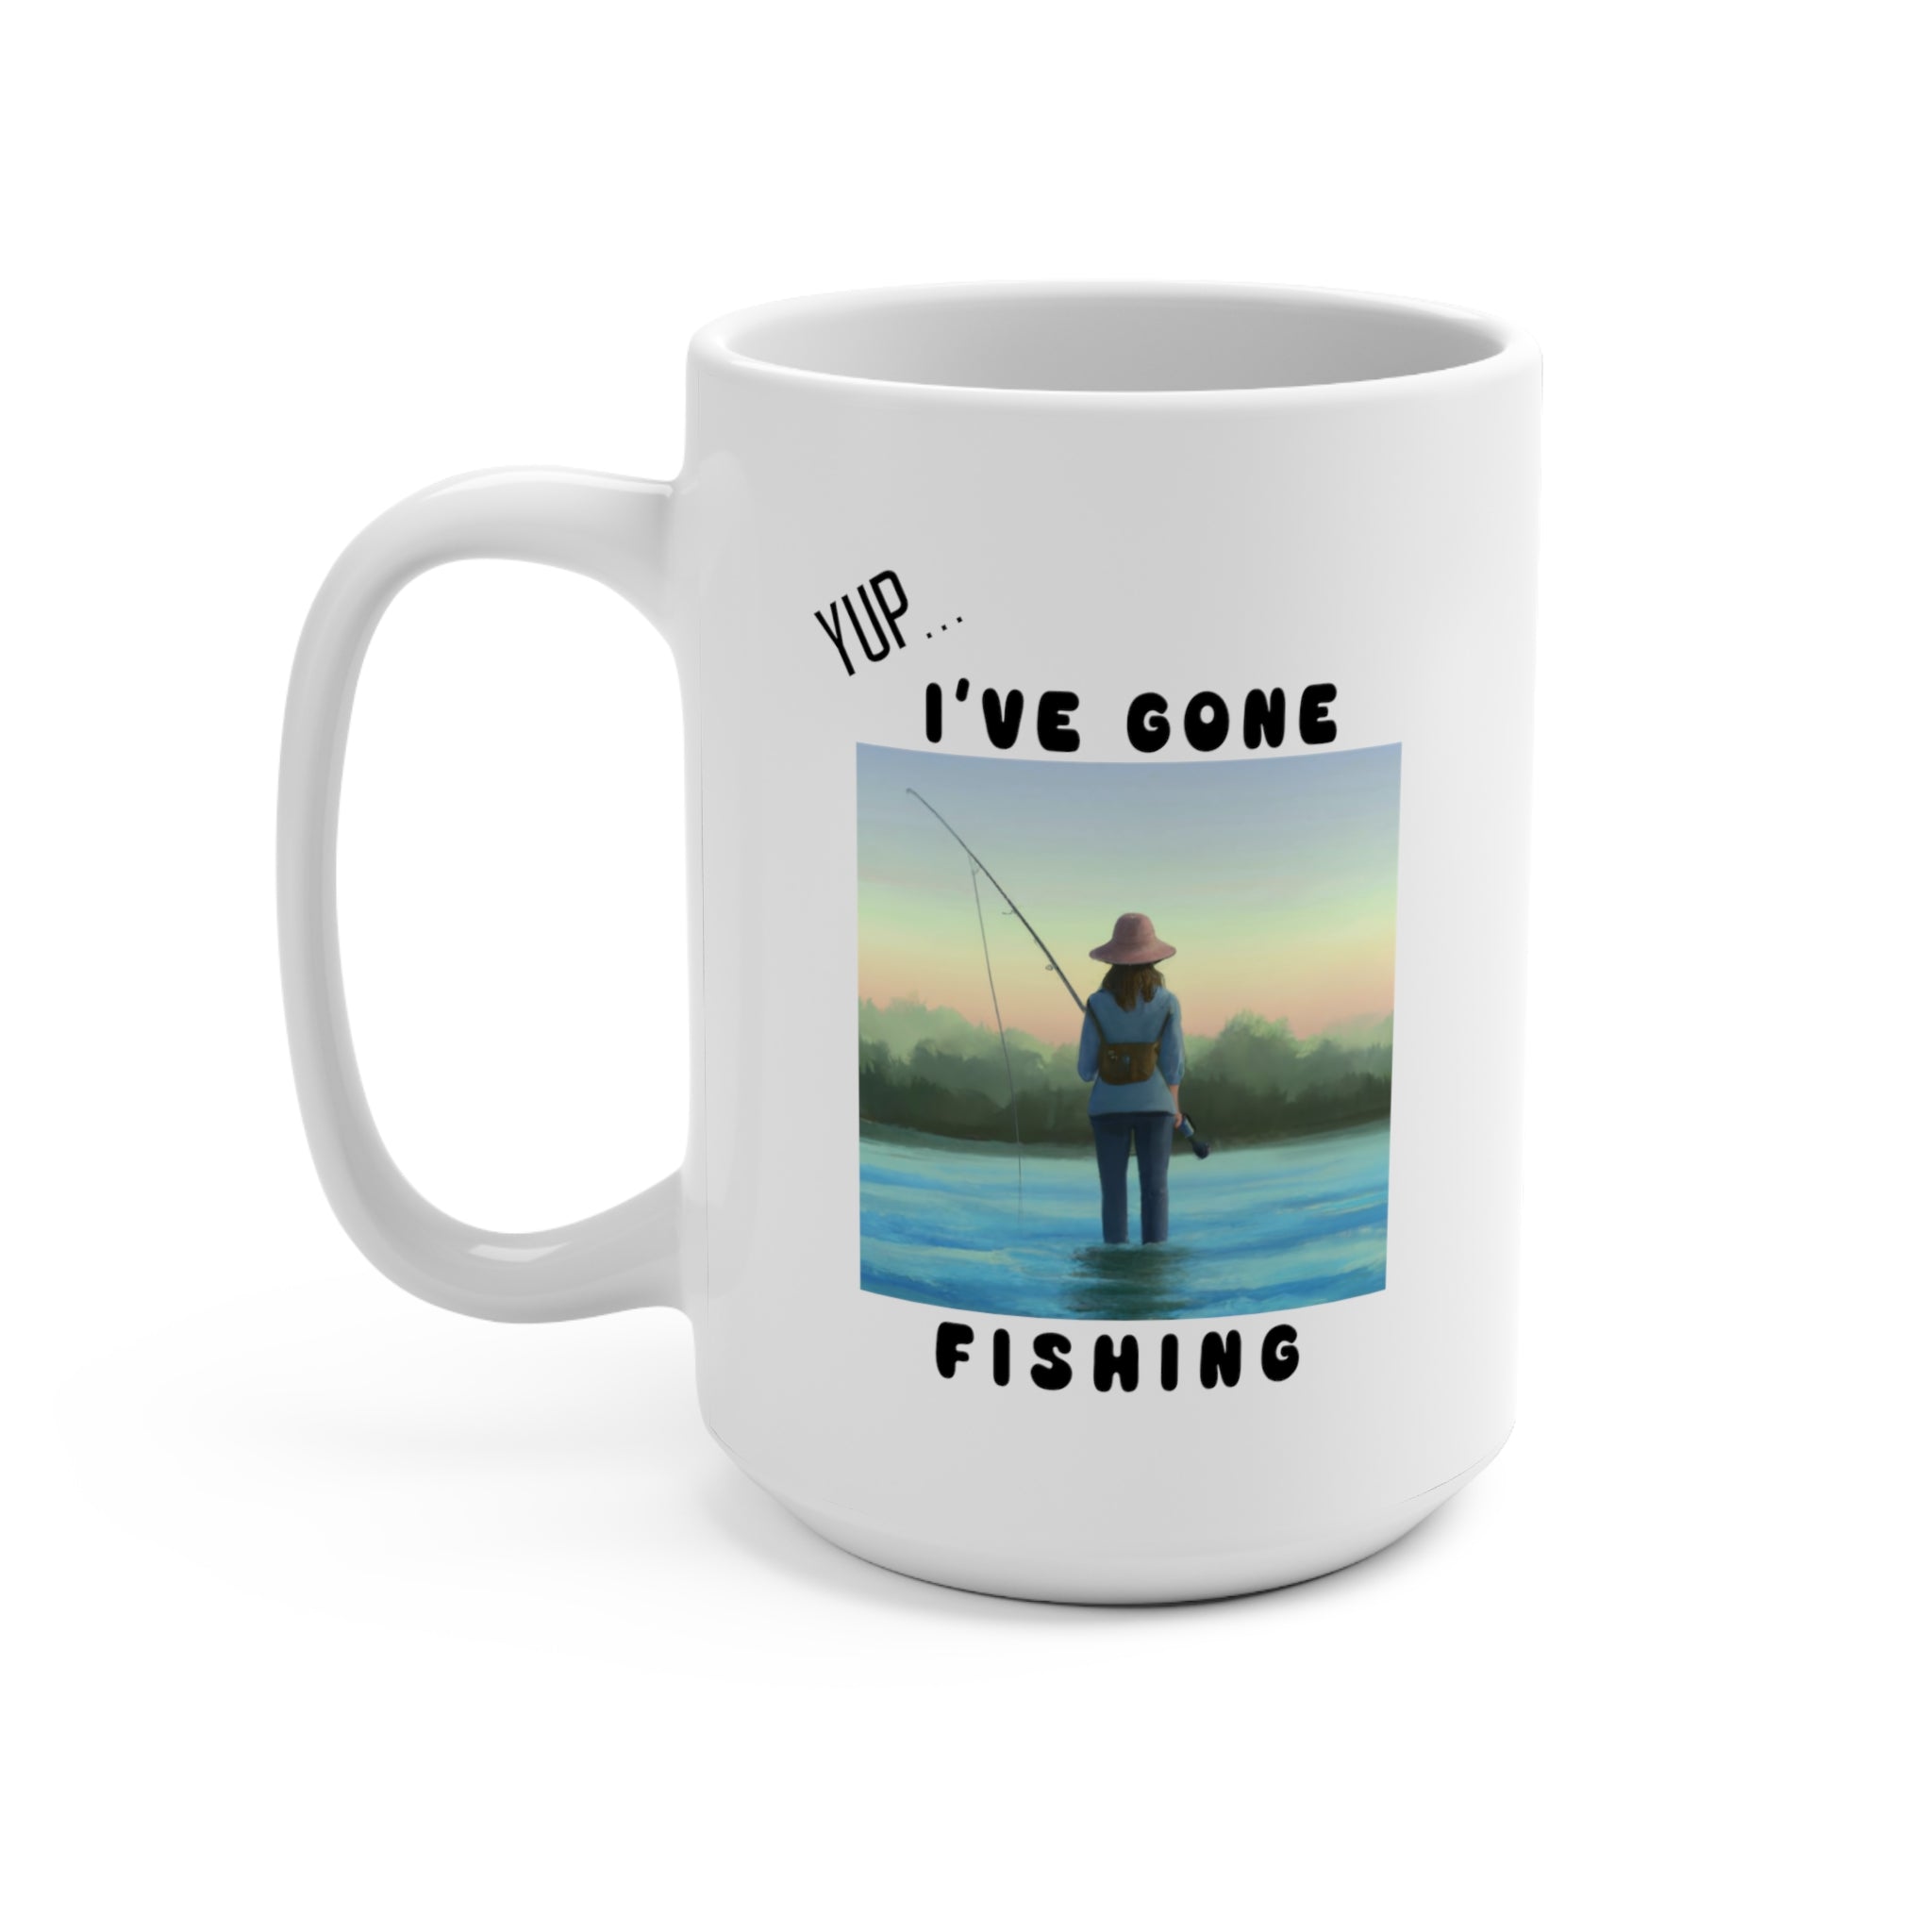 Fishing Mug For Her